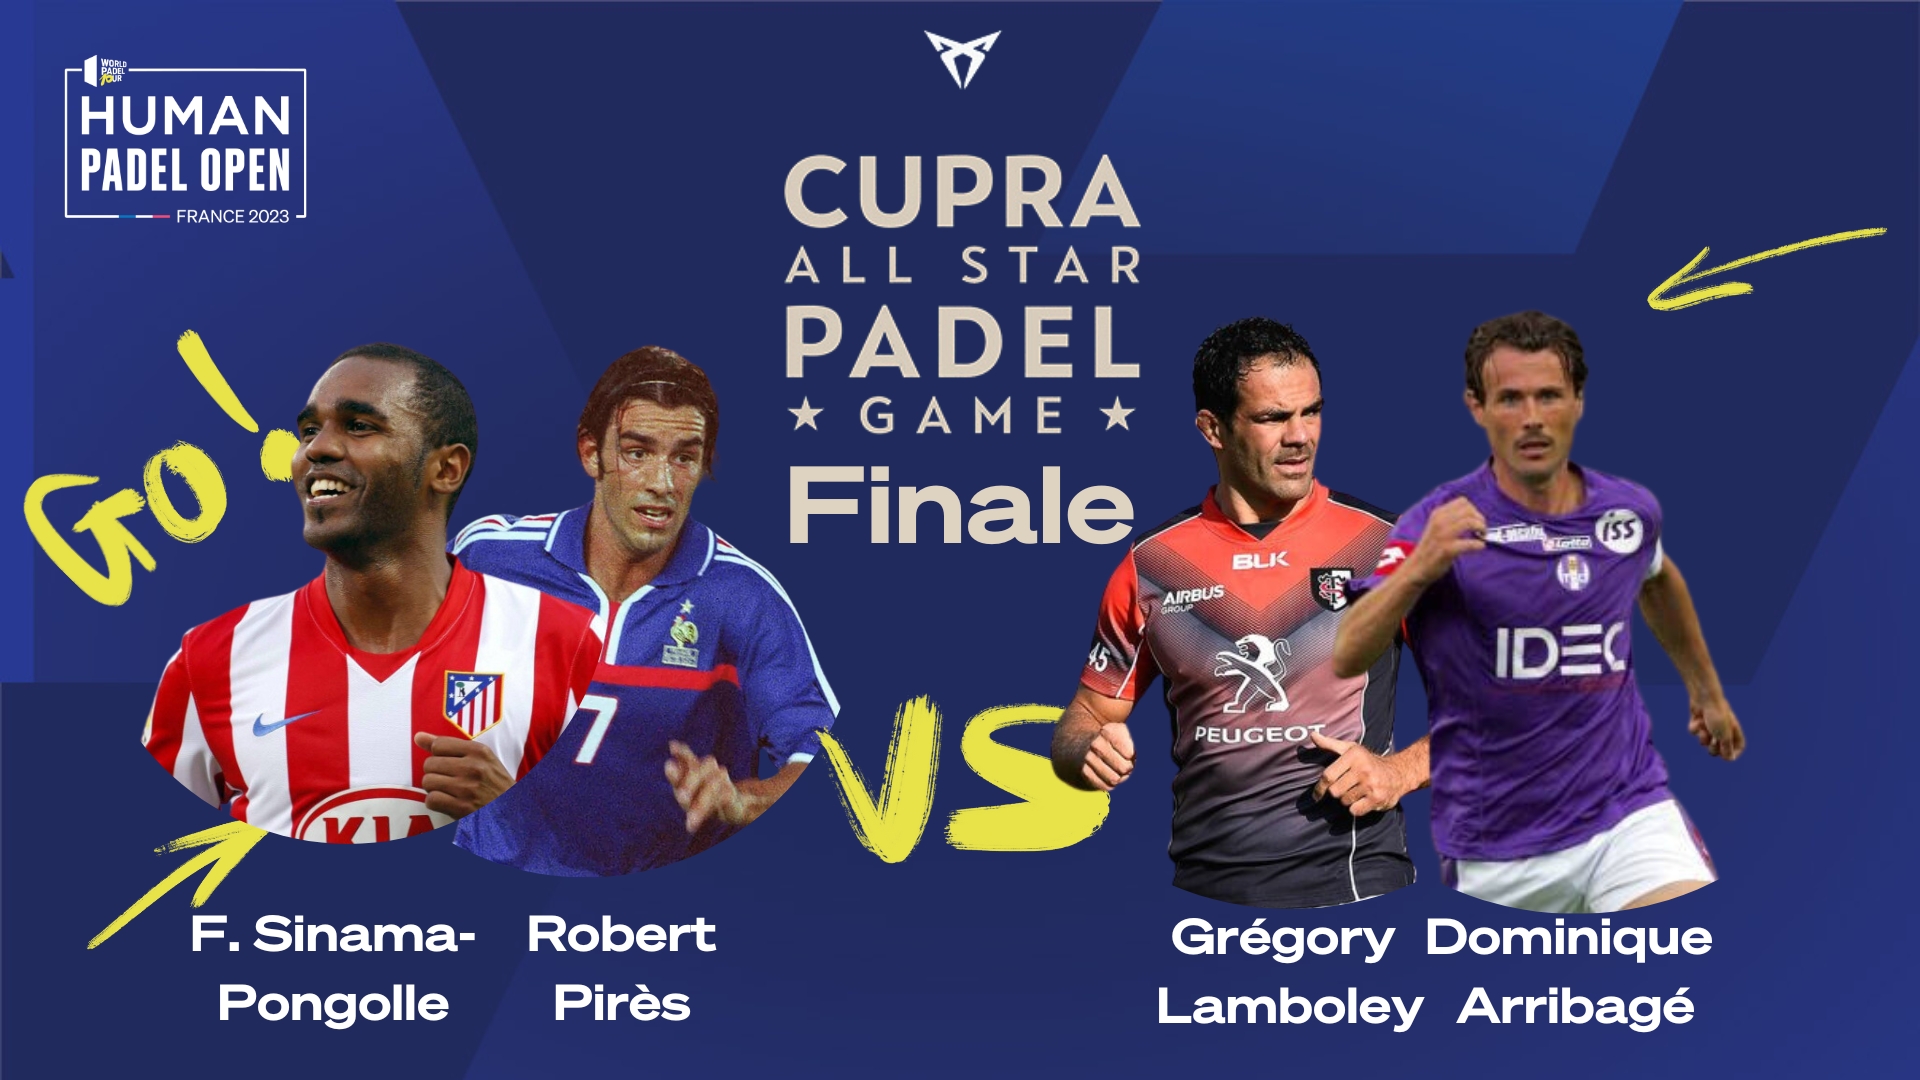 Todos Padel Juego de estrellas: la final Sinama-Pongolle / Pires vs Lamboley / Arribagé